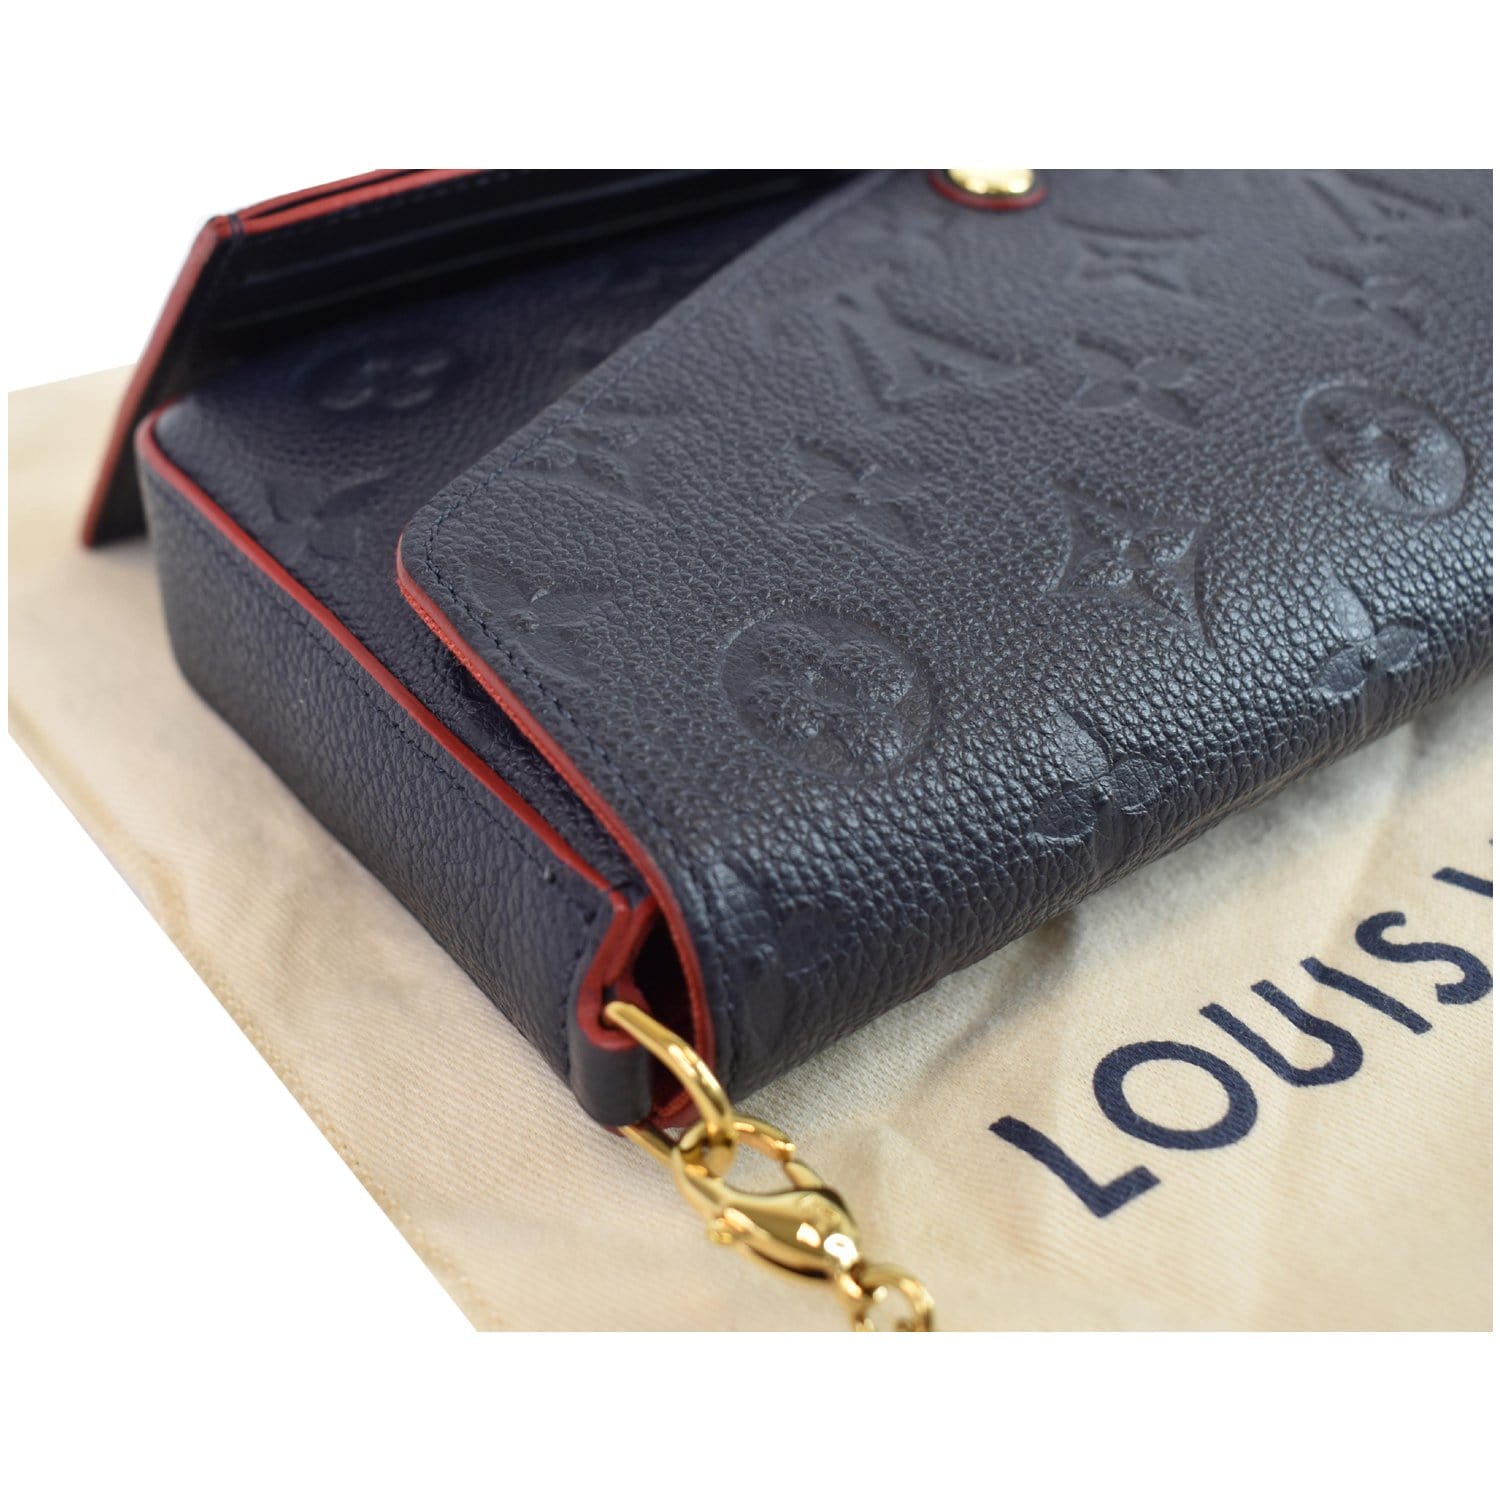 Pochette Felicie: Monogram or Black Empreinte Leather? : r/Louisvuitton